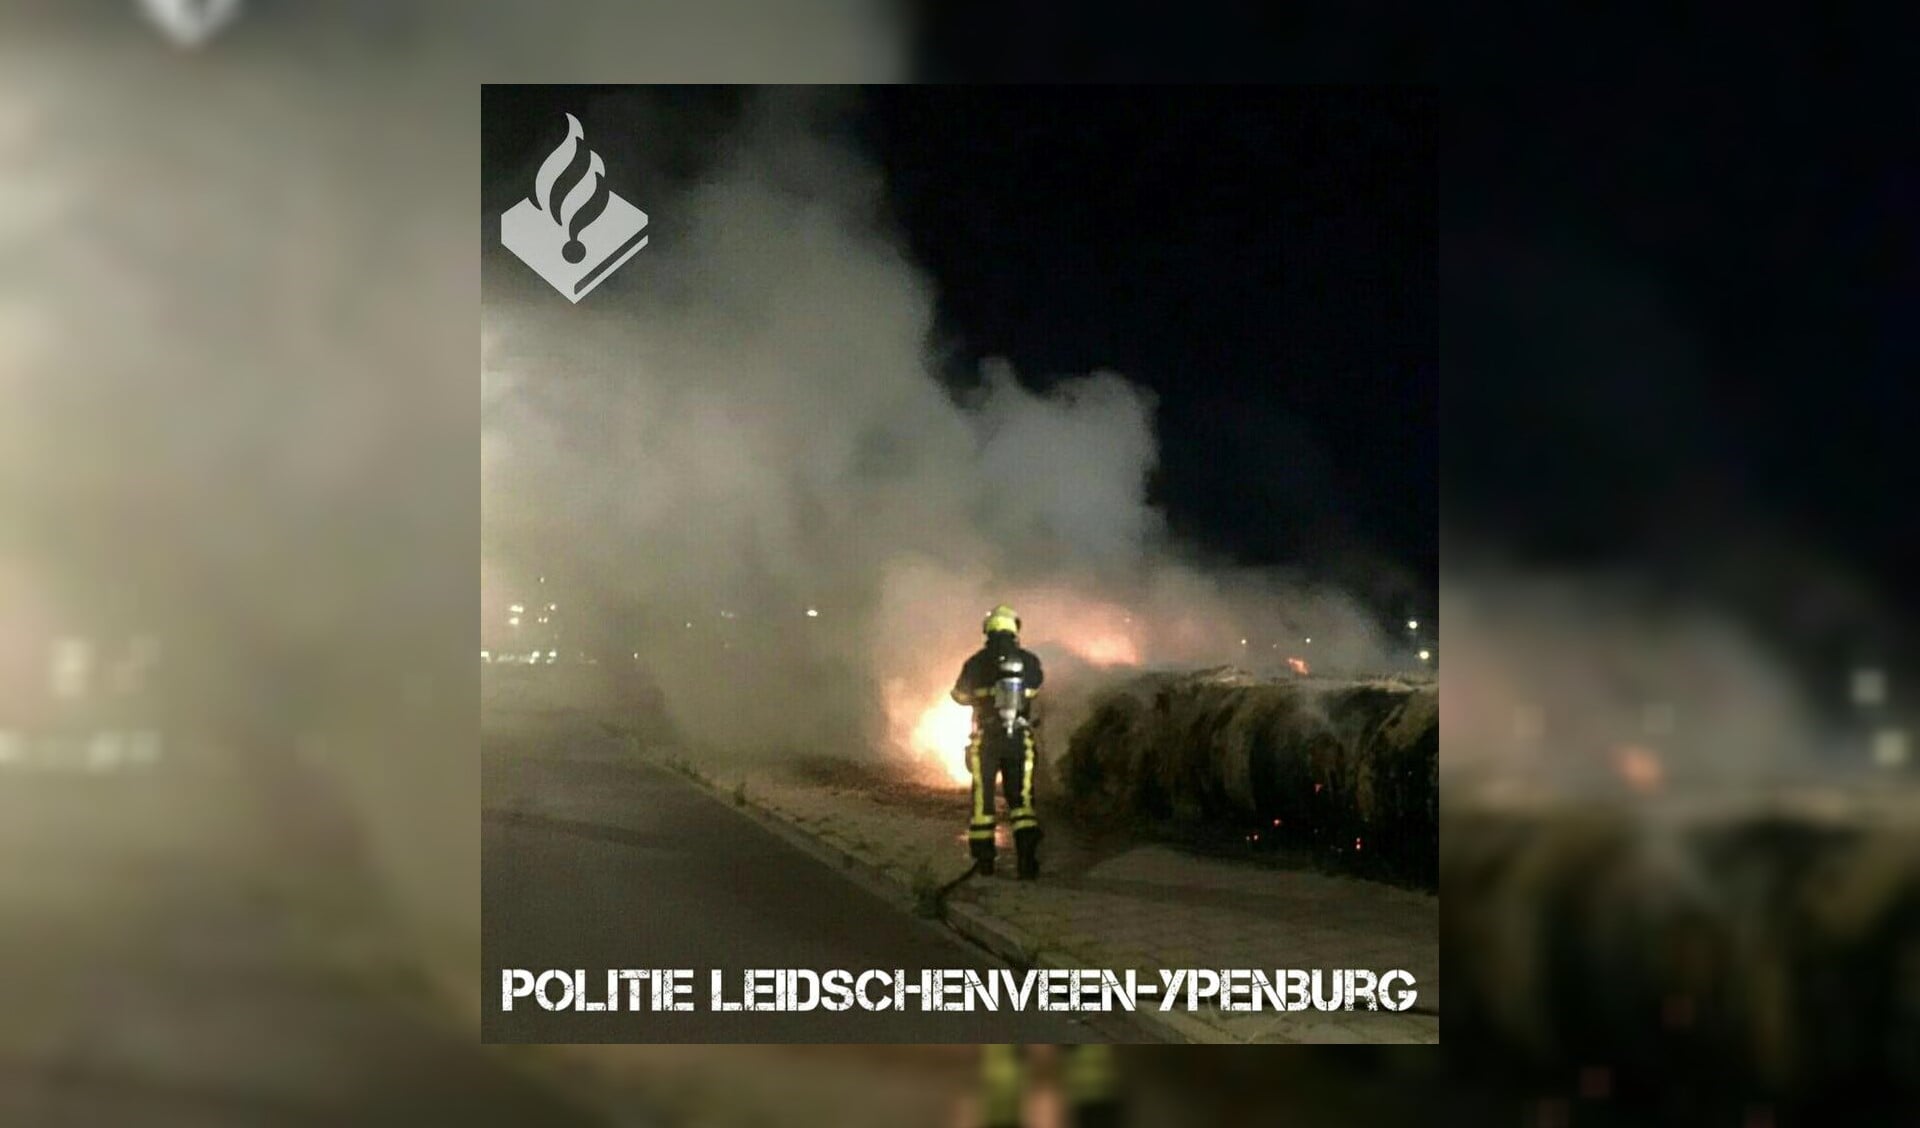 Foto: Politie Leidschenveen-Ypenburg